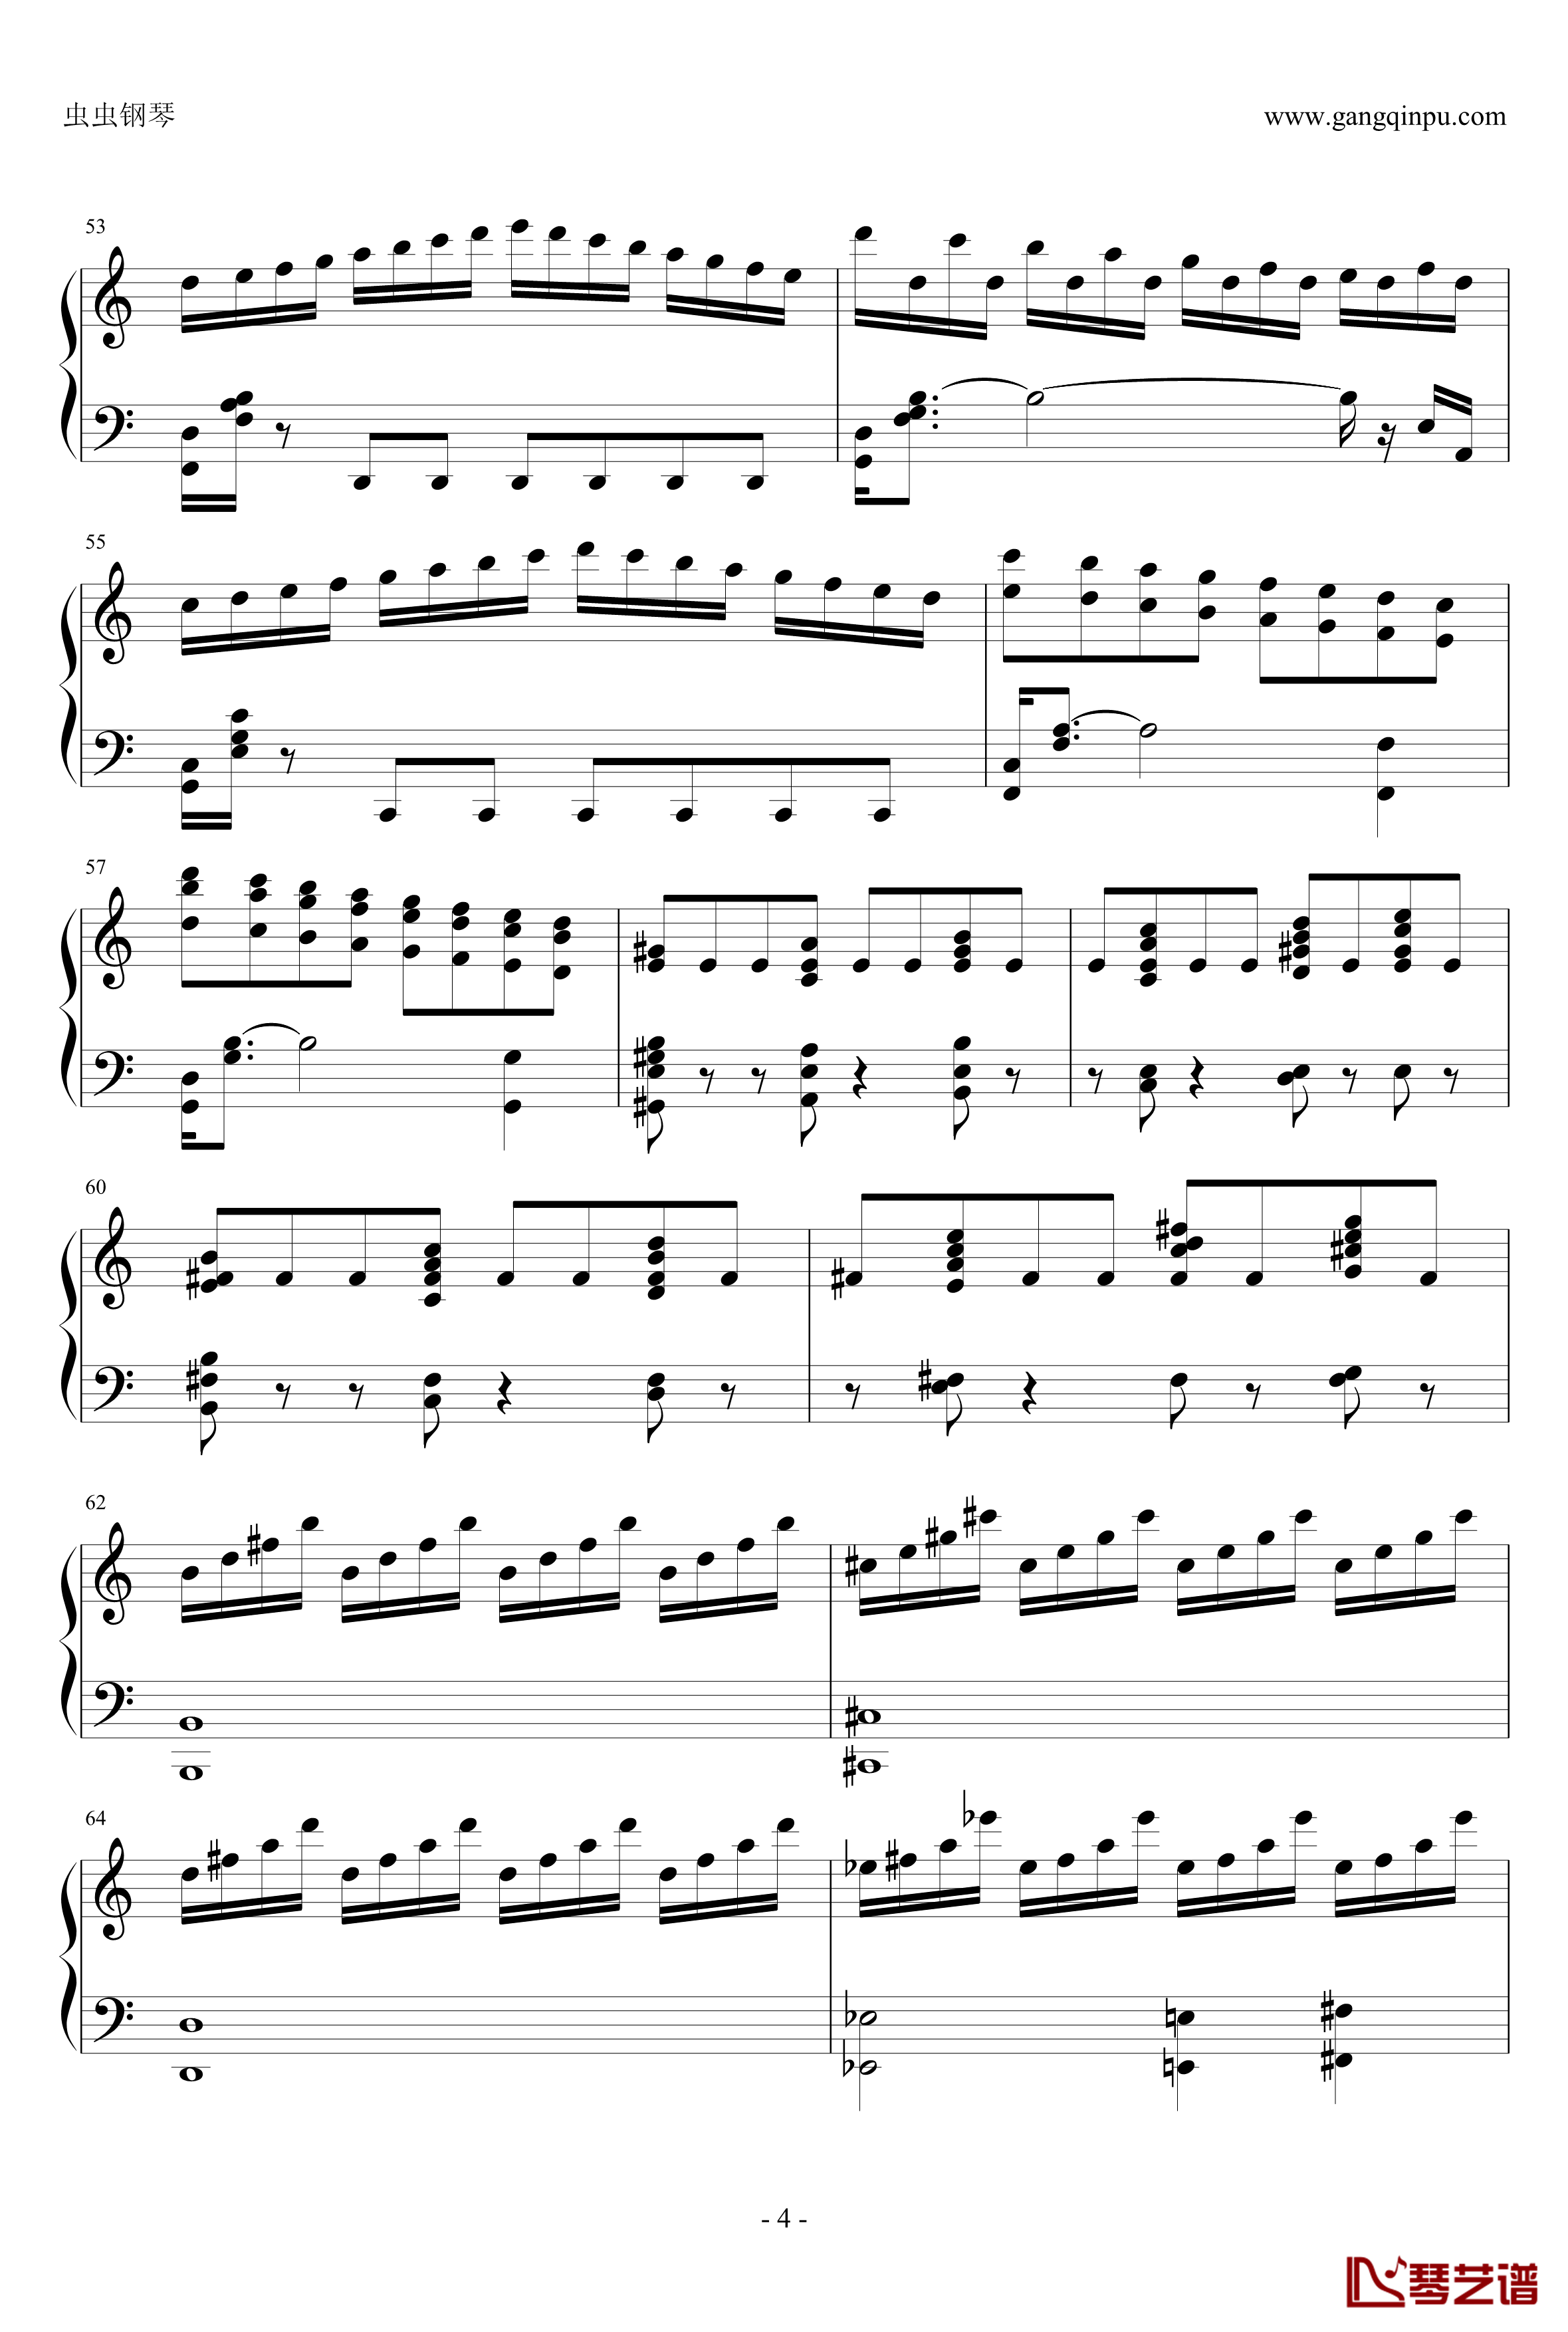 贝多芬V3奏鸣曲钢琴谱-劲舞团改编-劲舞团